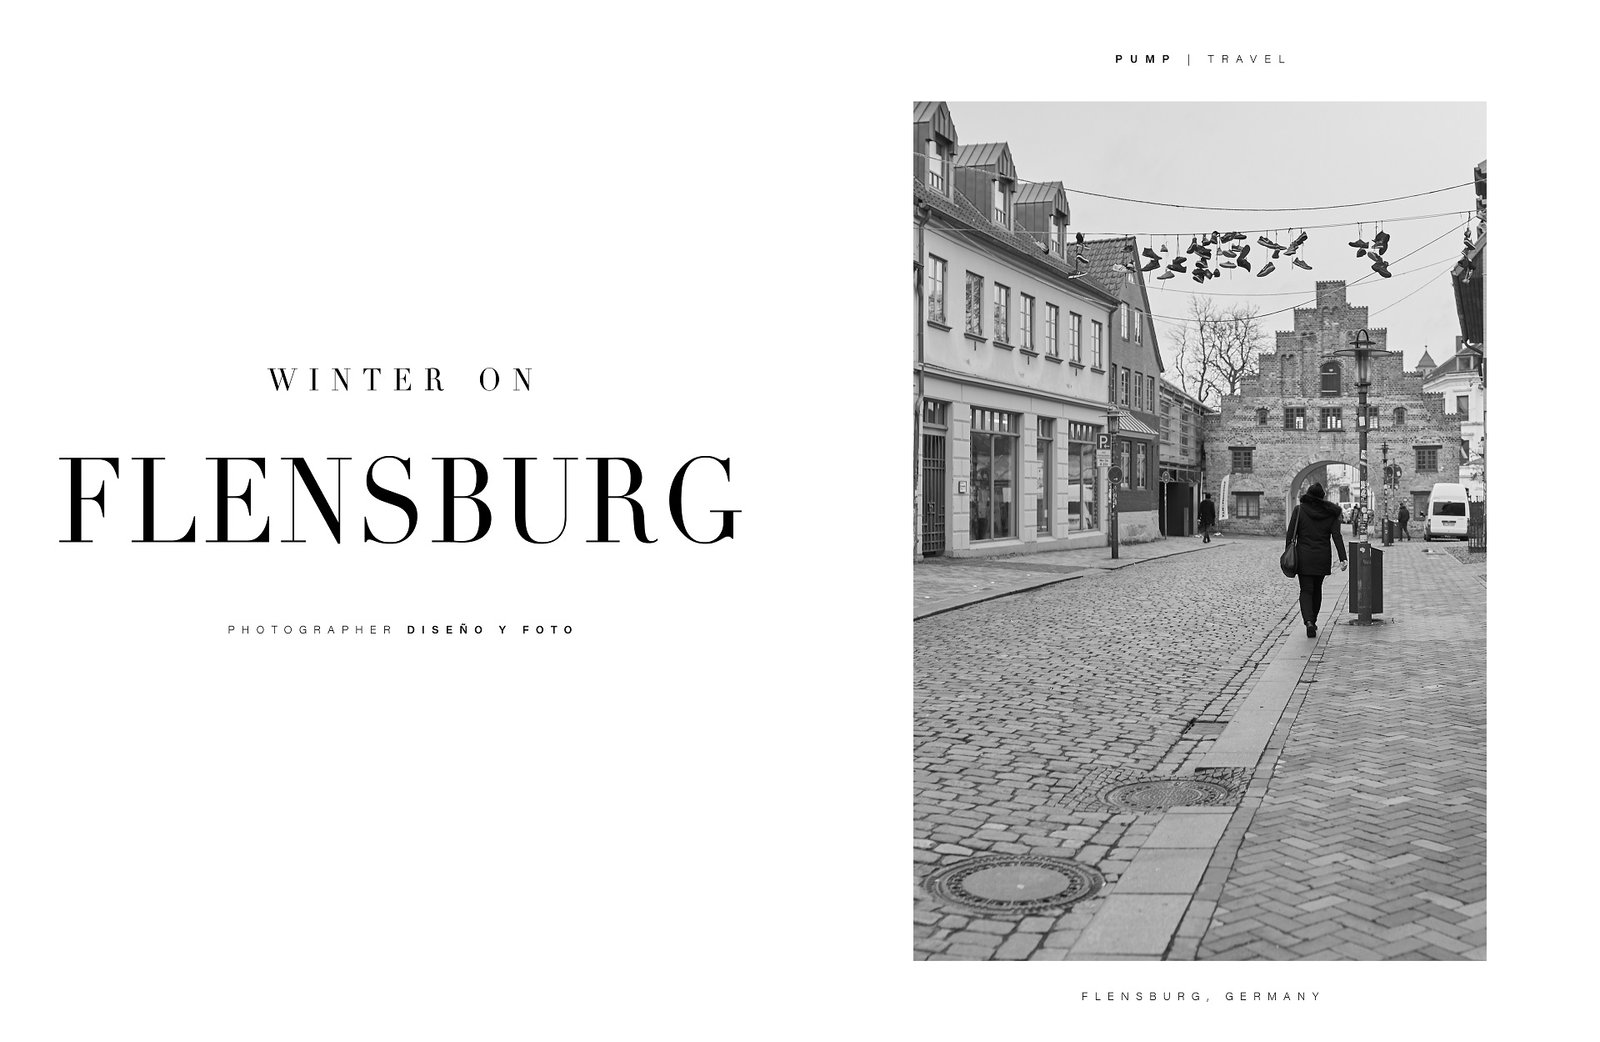 Revista de moda pump magazine publican diseño y foto flensburg alemania Diseño y Foto fotografo alicante